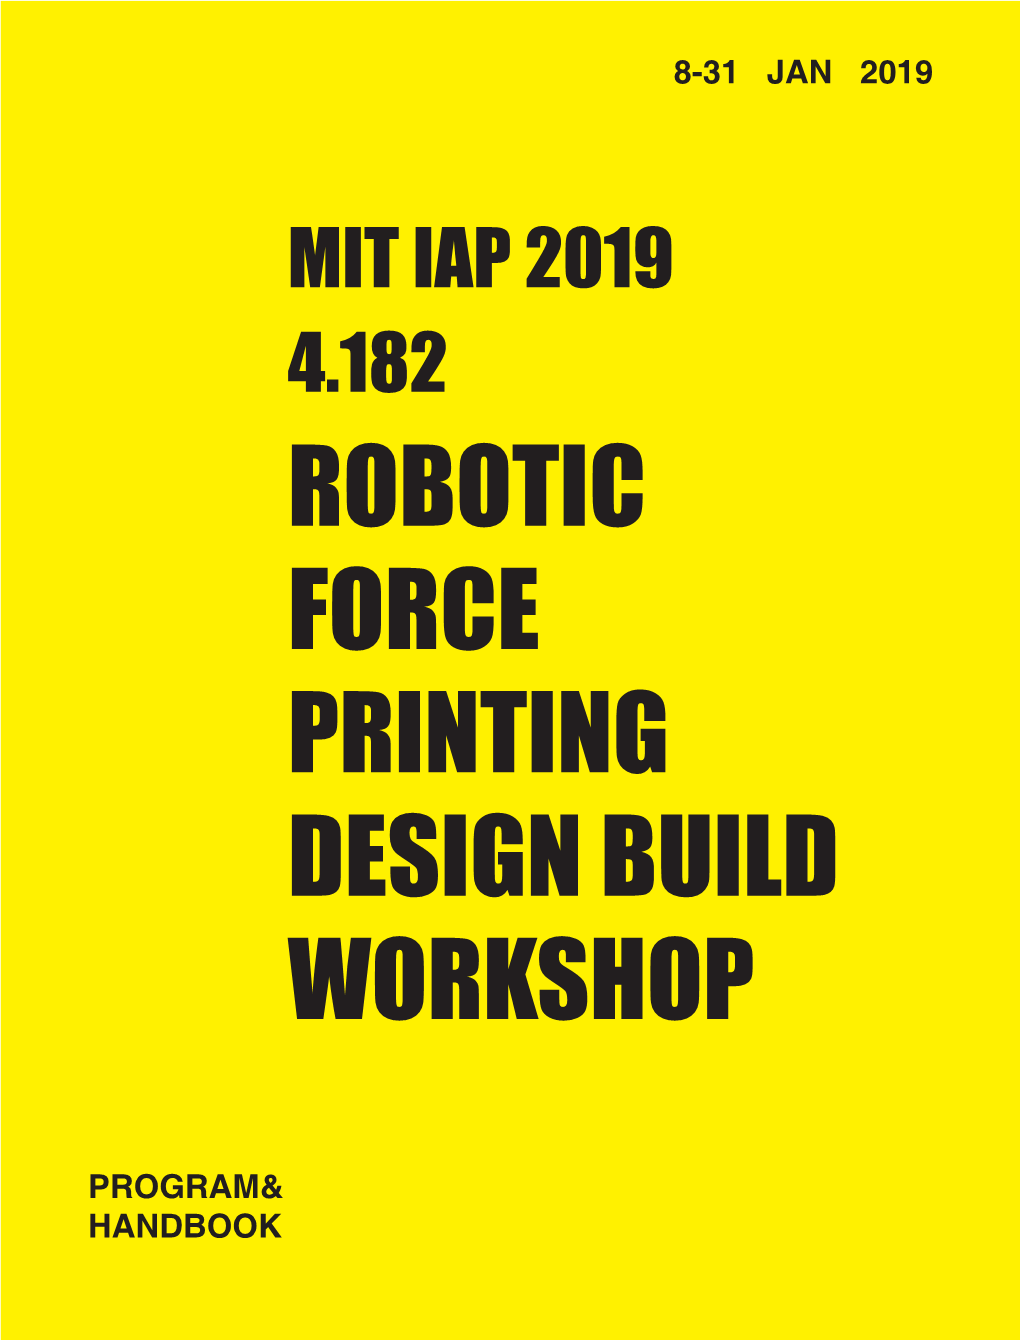 Robotic Force Printing Design Build Workshop